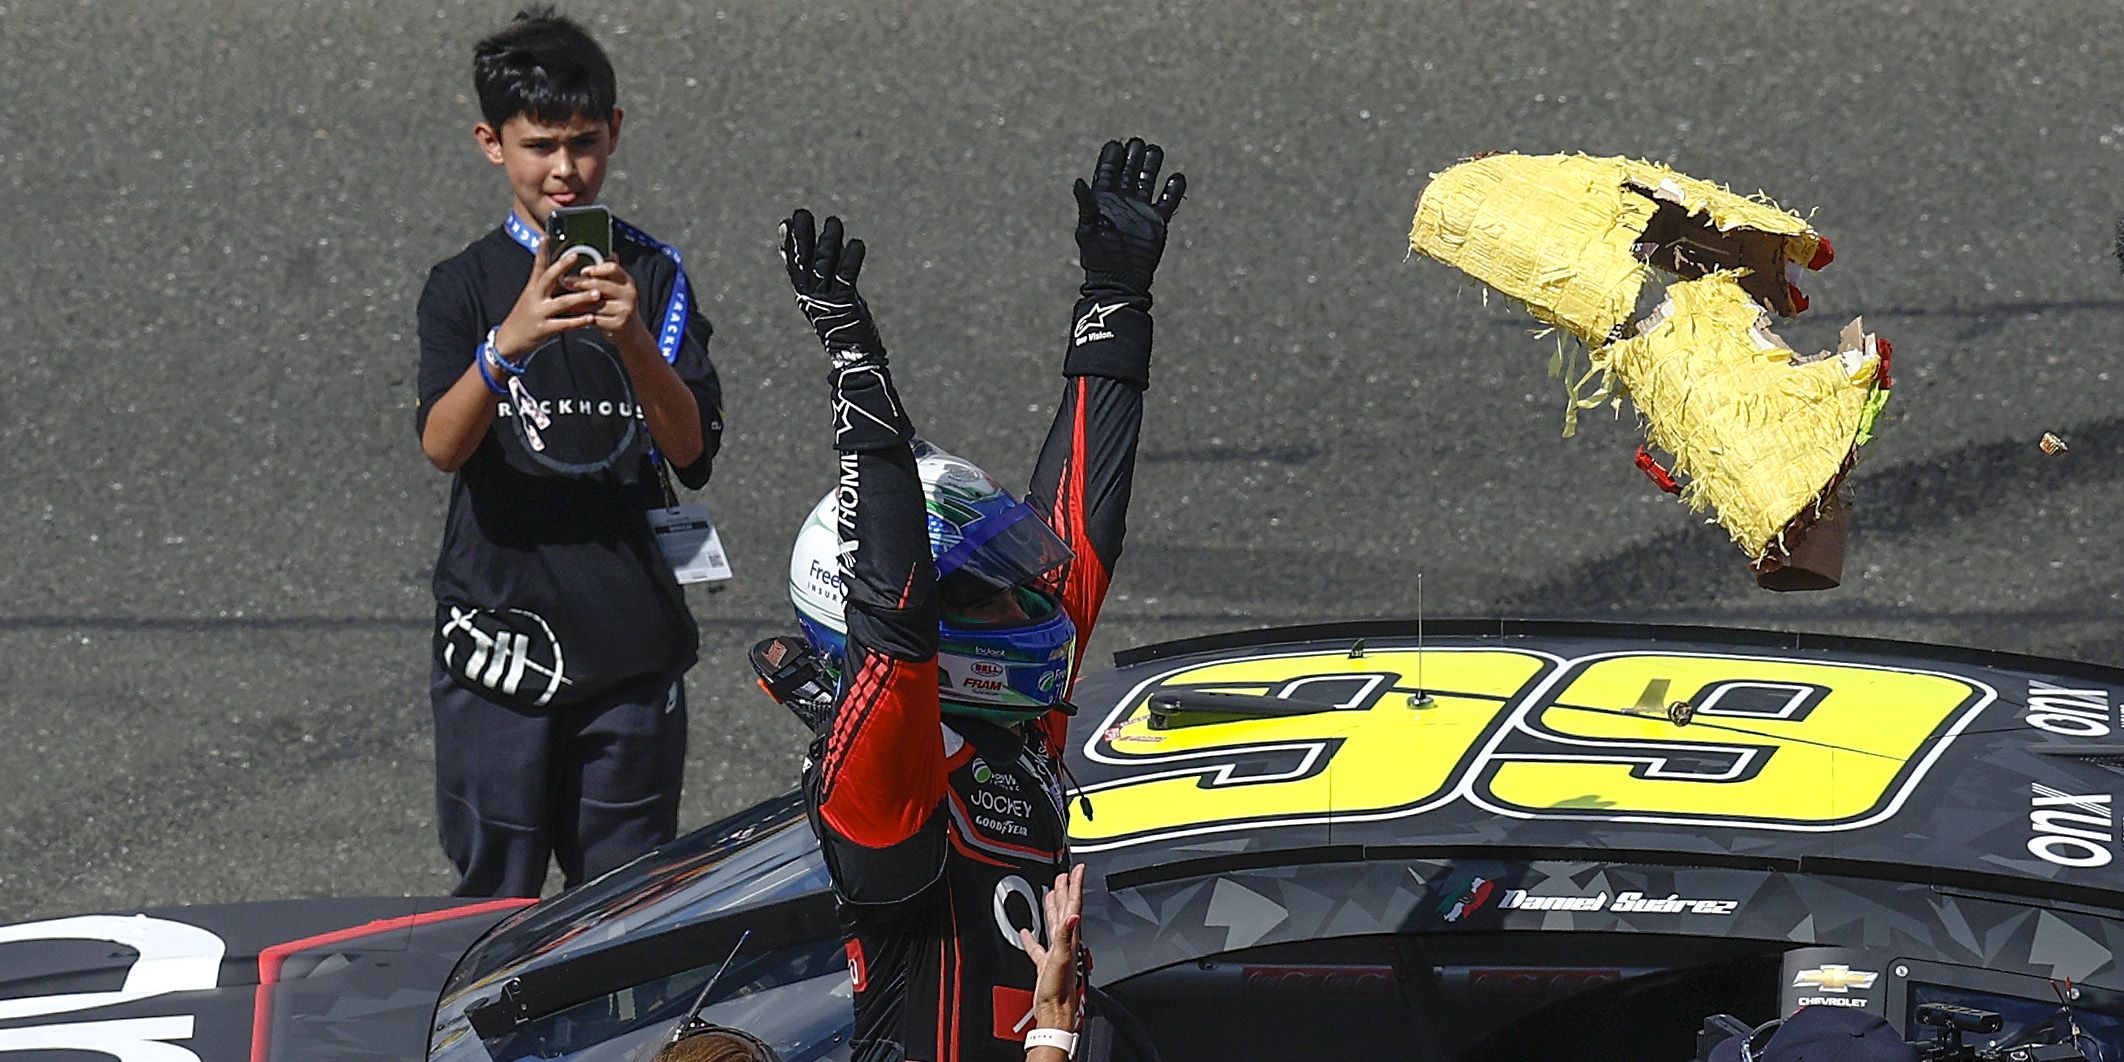 Daniel Suarez Finally Takes Breakthrough NASCAR Win At Sonoma